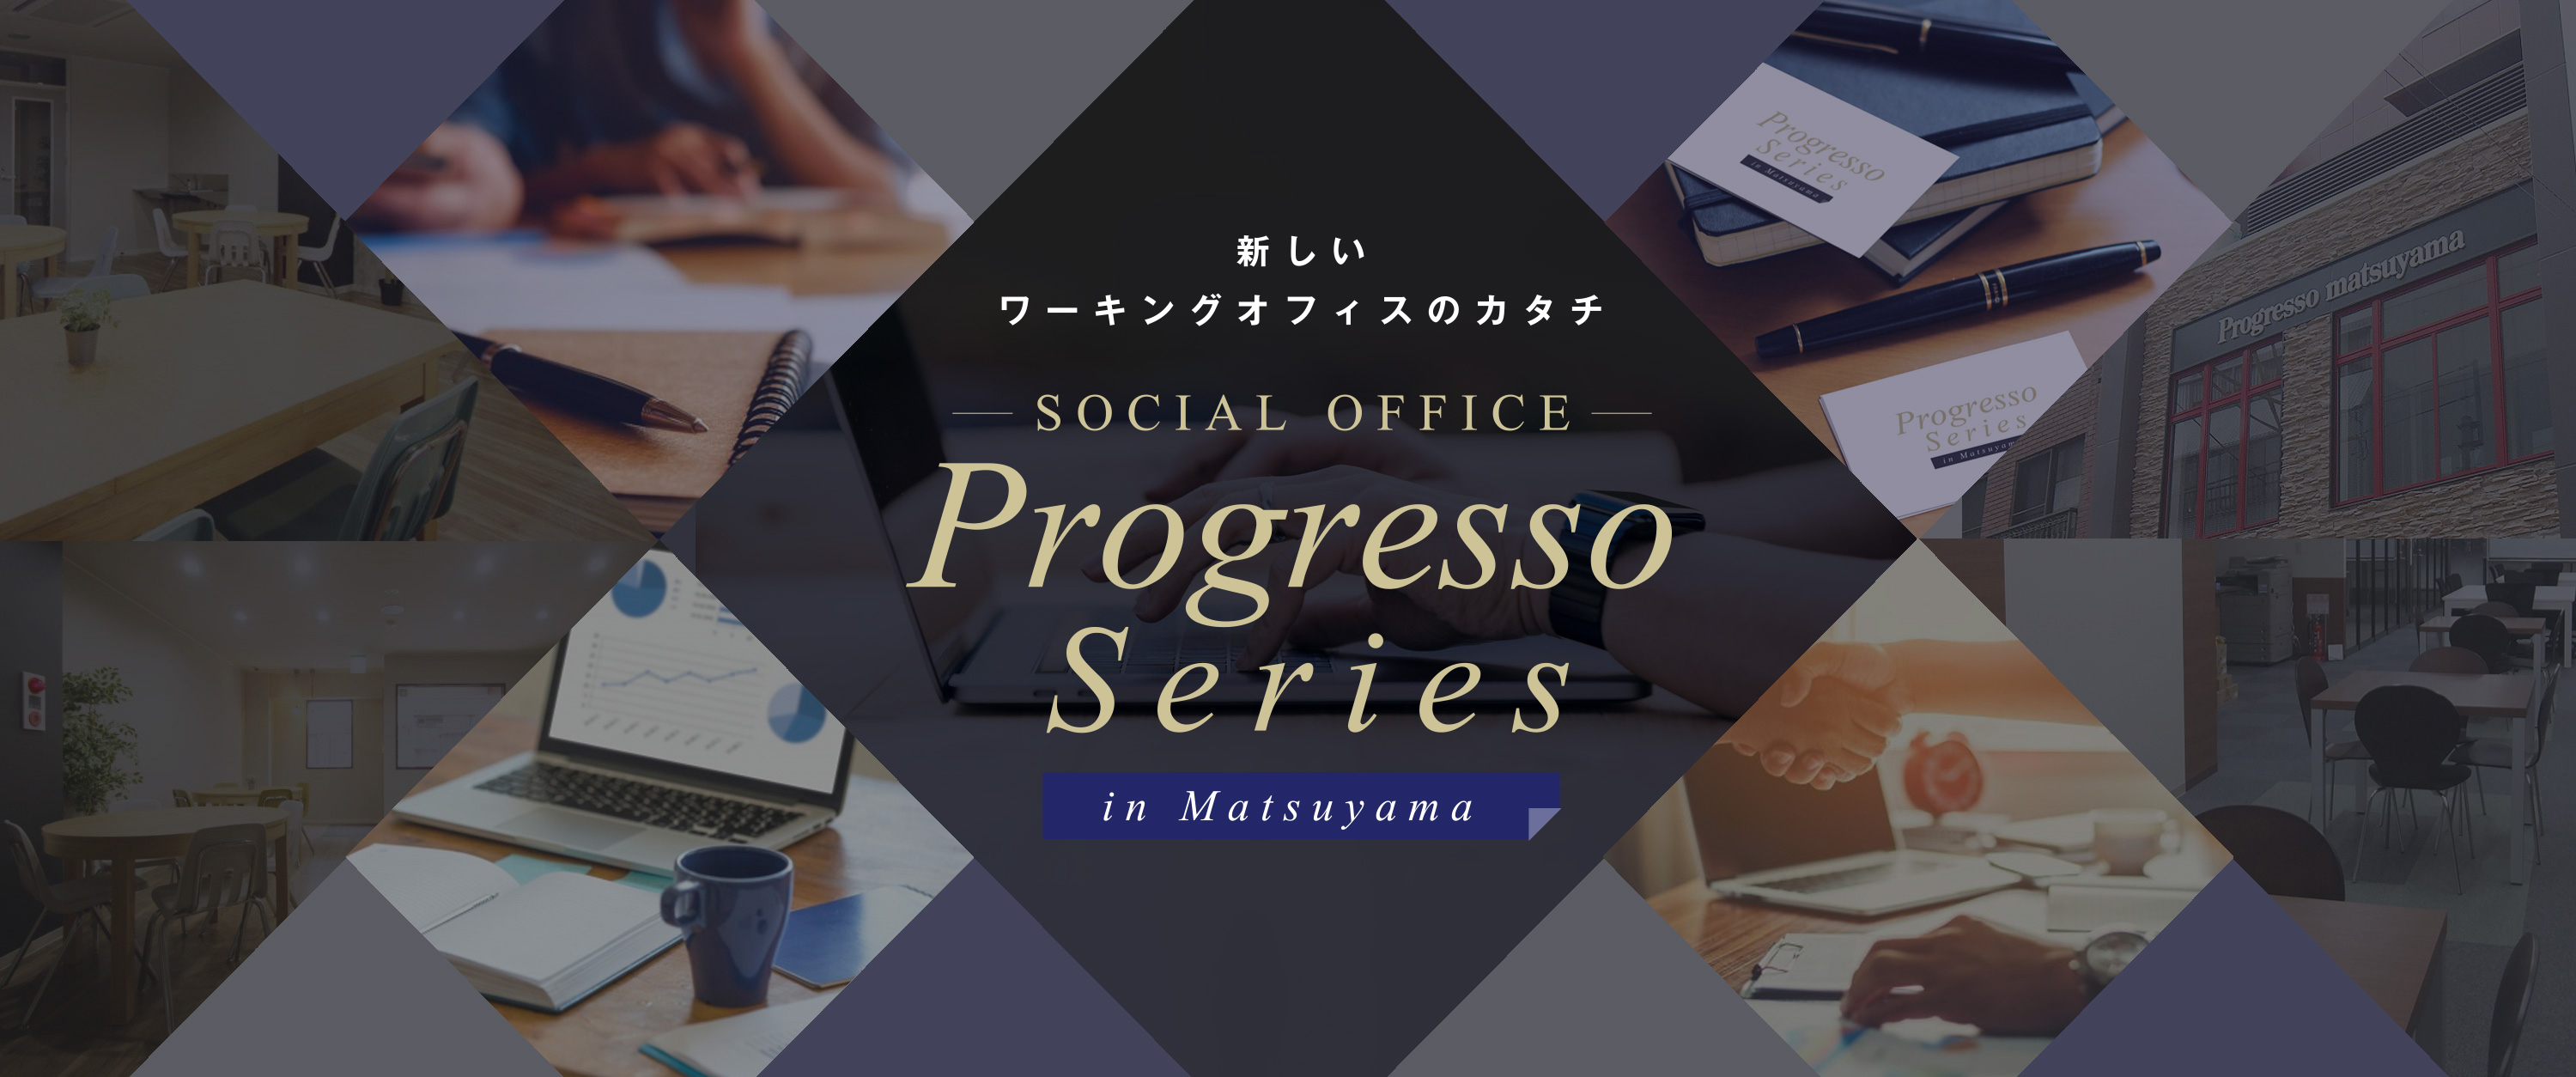 新しいワーキングオフィスのカタチ SOCIAL OFFICE Progresso Series in Matsuyama